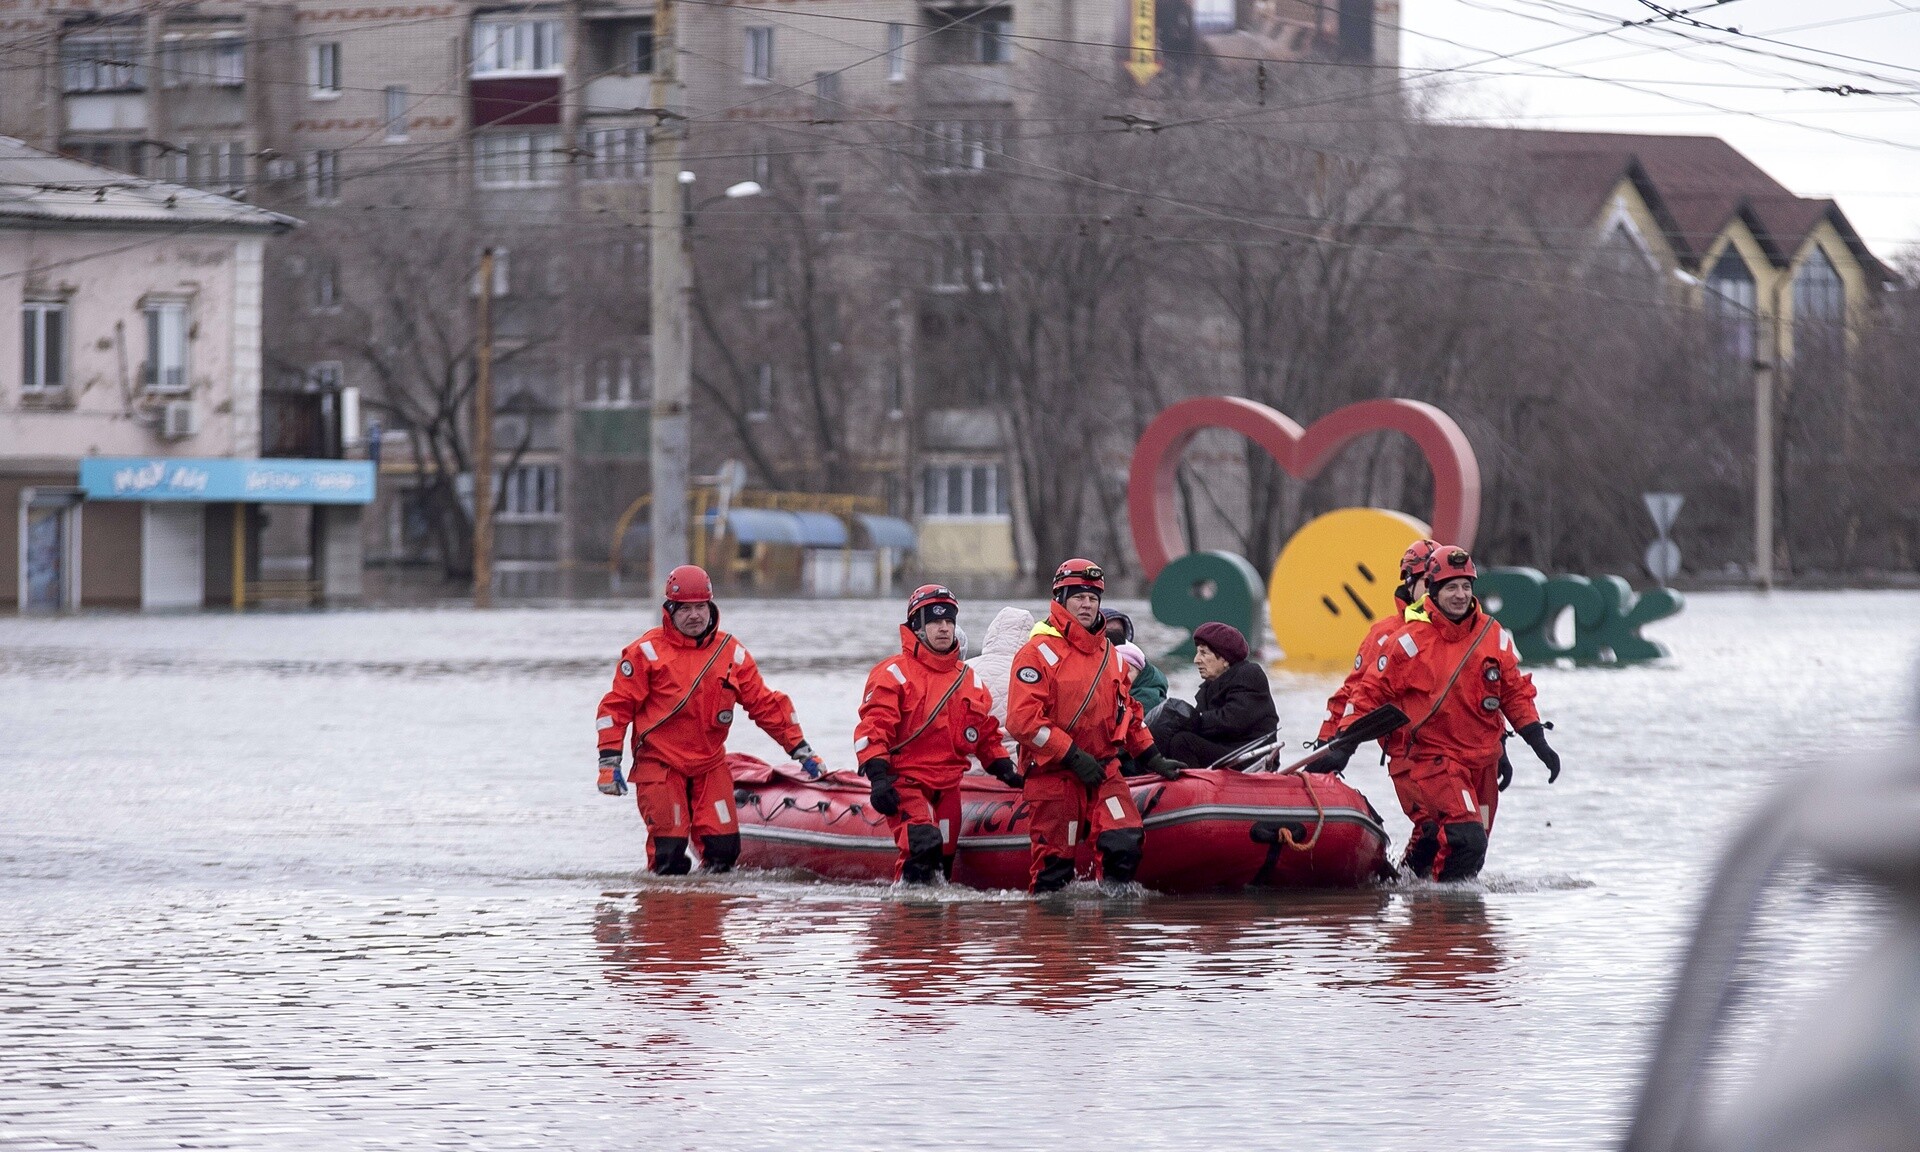 Πλημμύρες στη Ρωσία: Οι πιο δύσκολες ημέρες εξακολουθούν να βρίσκονται μπροστά μας, λέει το Κρεμλίνο